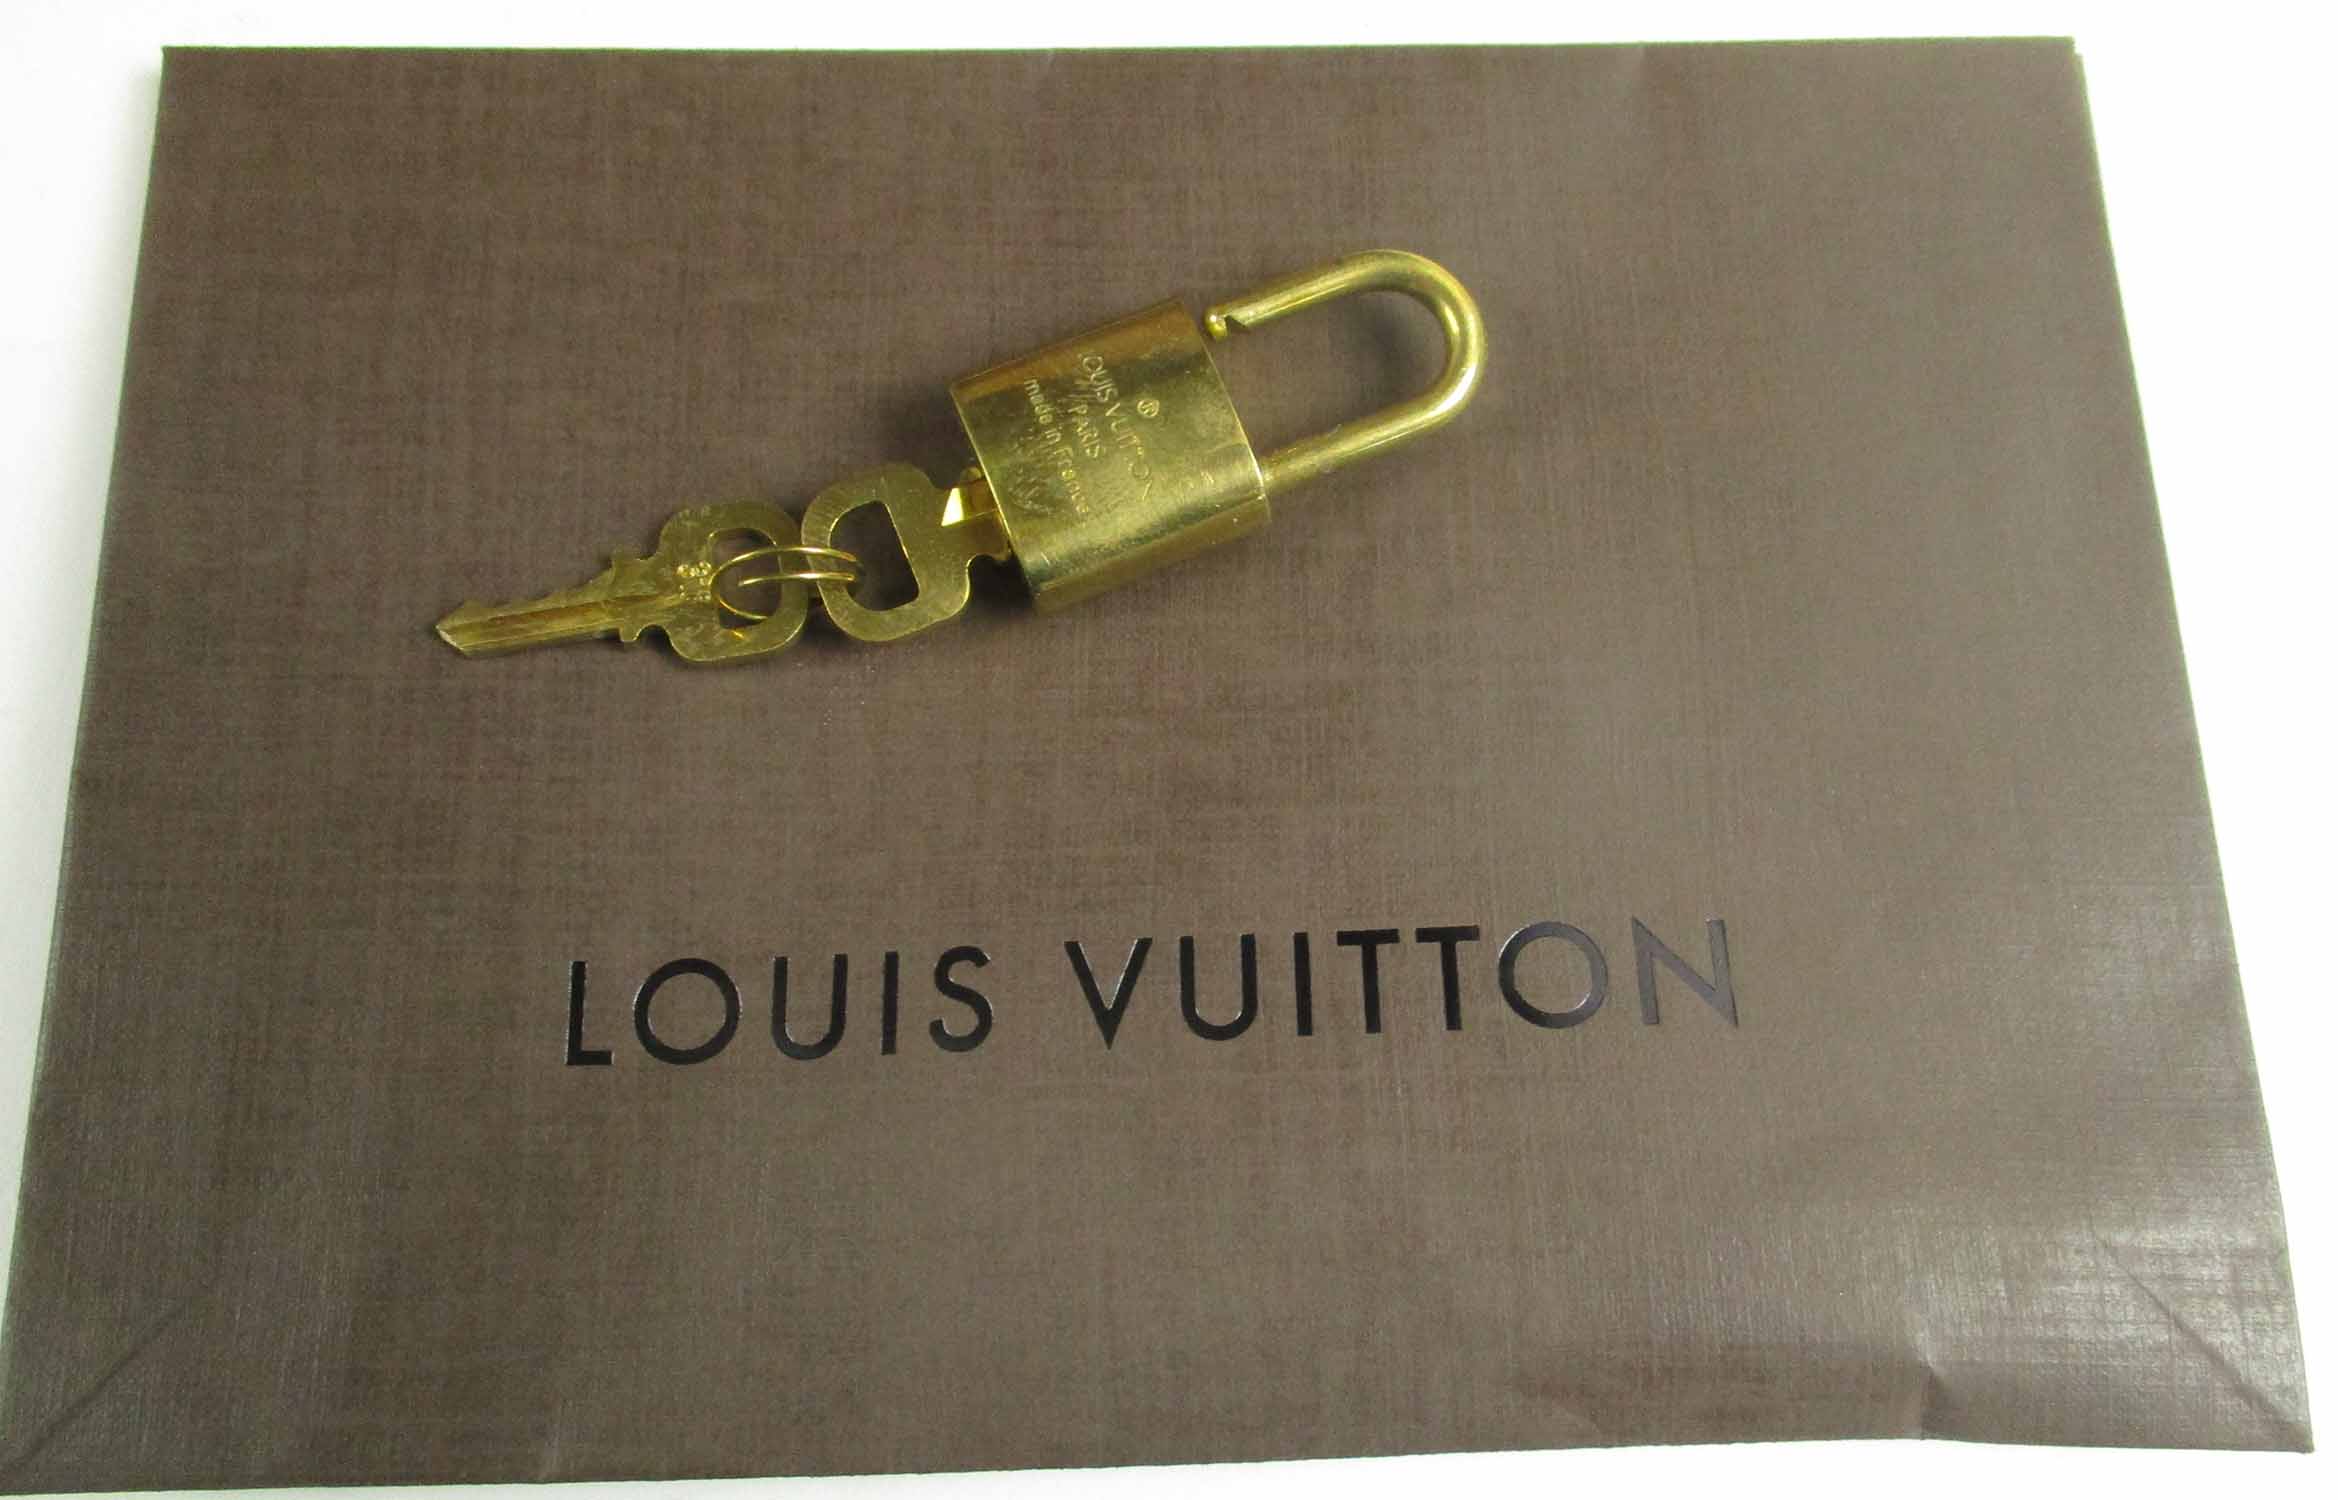 LOUIS VUITTON 'SIRIUS 70' MONOGRAM SUITCASE, plus padlock and keys, approx  72cm L, 50cm H. (unused)